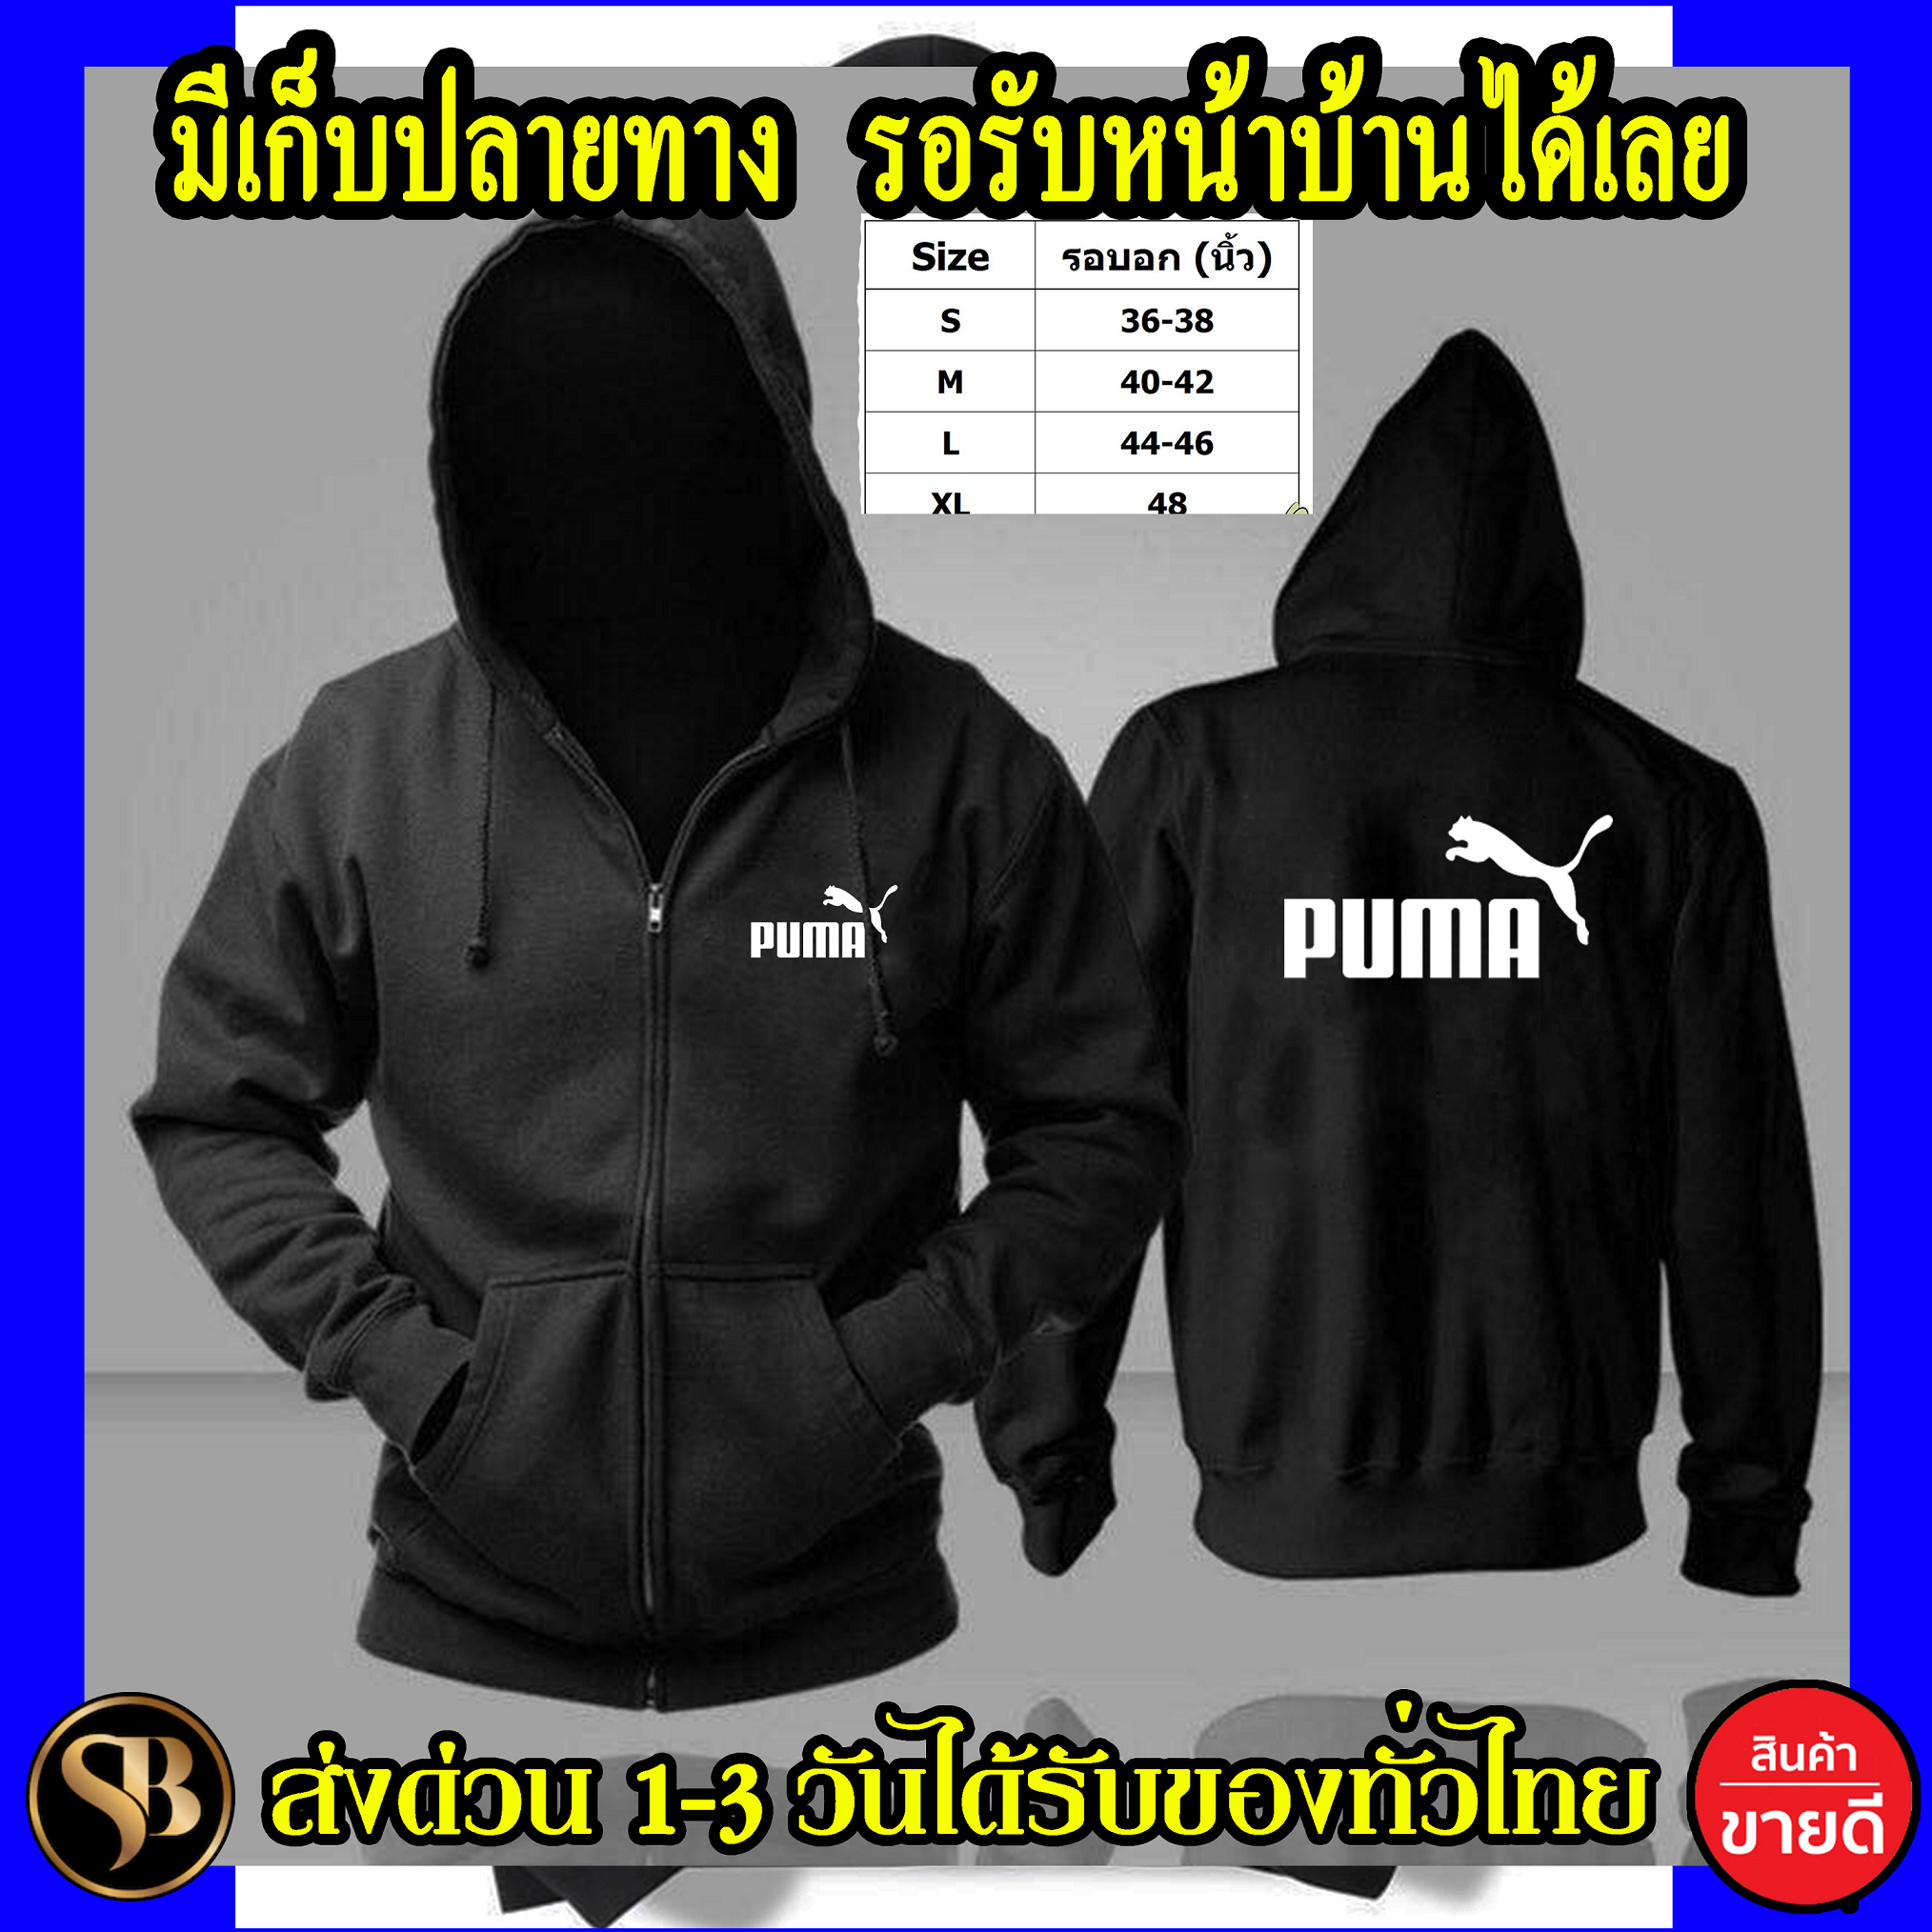 Puma เสื้อฮู้ด ผ้าดี ฮู้ดซิปและสวม เสื้อกันหนาว งานดีแน่นอน หนานุ่มใส่สบาย Hoodie สกรีนเฟล็ก PU ส่งด่วนทั่วไทย